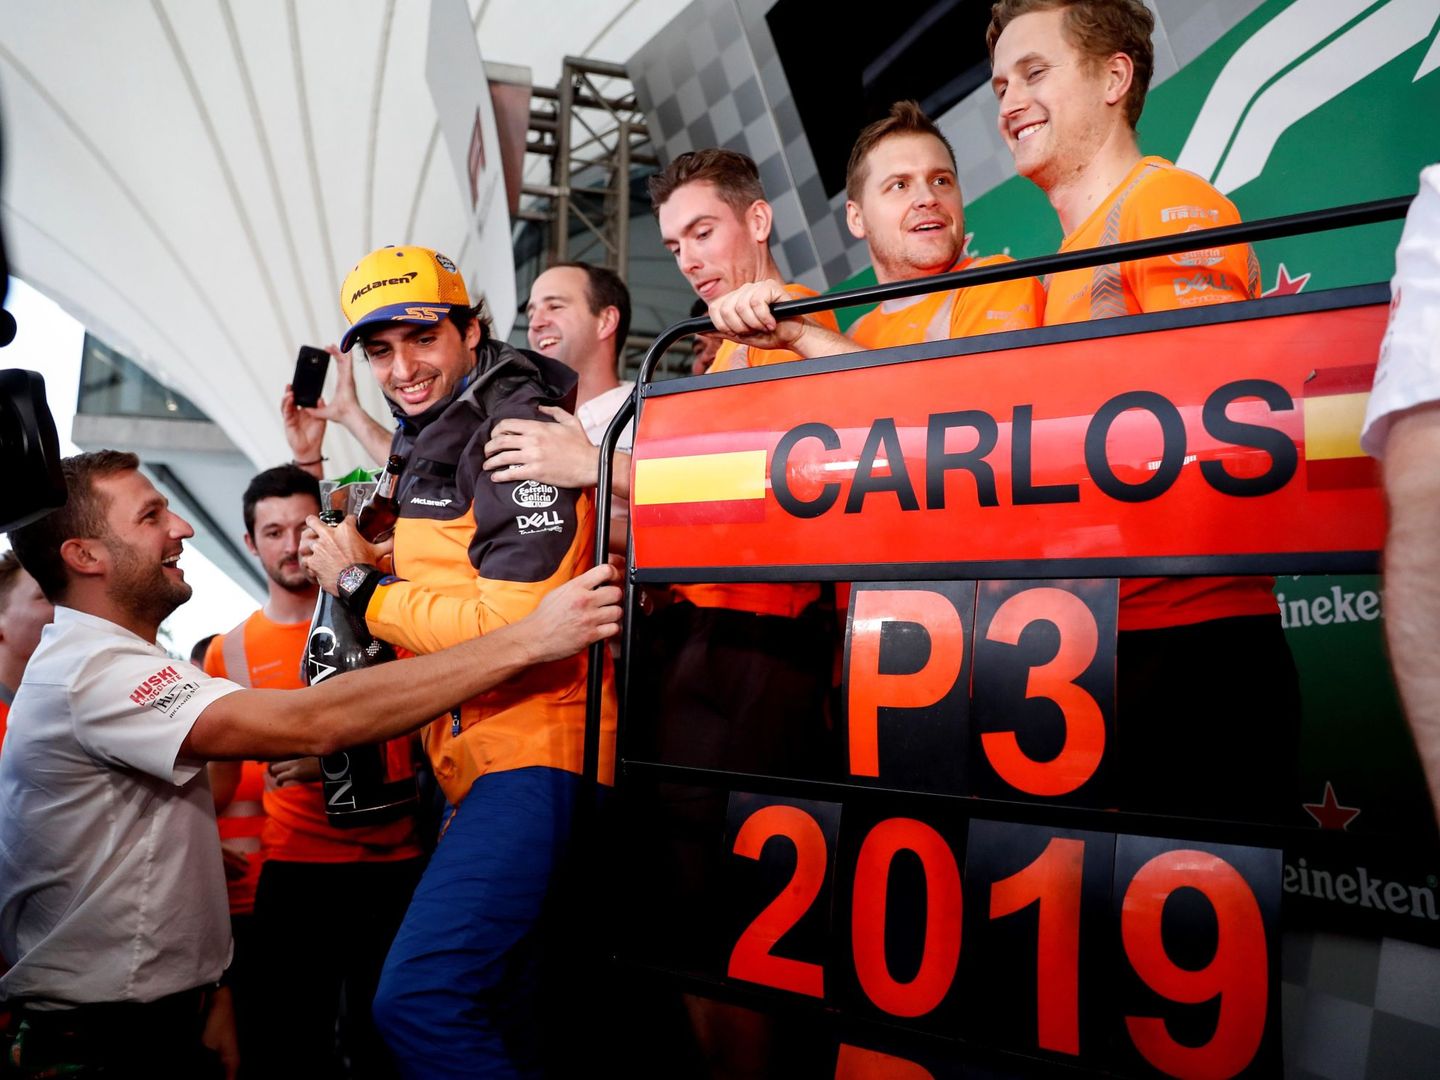 Interlagos siempre traerá buenos recuerdos a Carlos Sainz, pues fue aquí donde logró su primer podium en Fórmula 1.